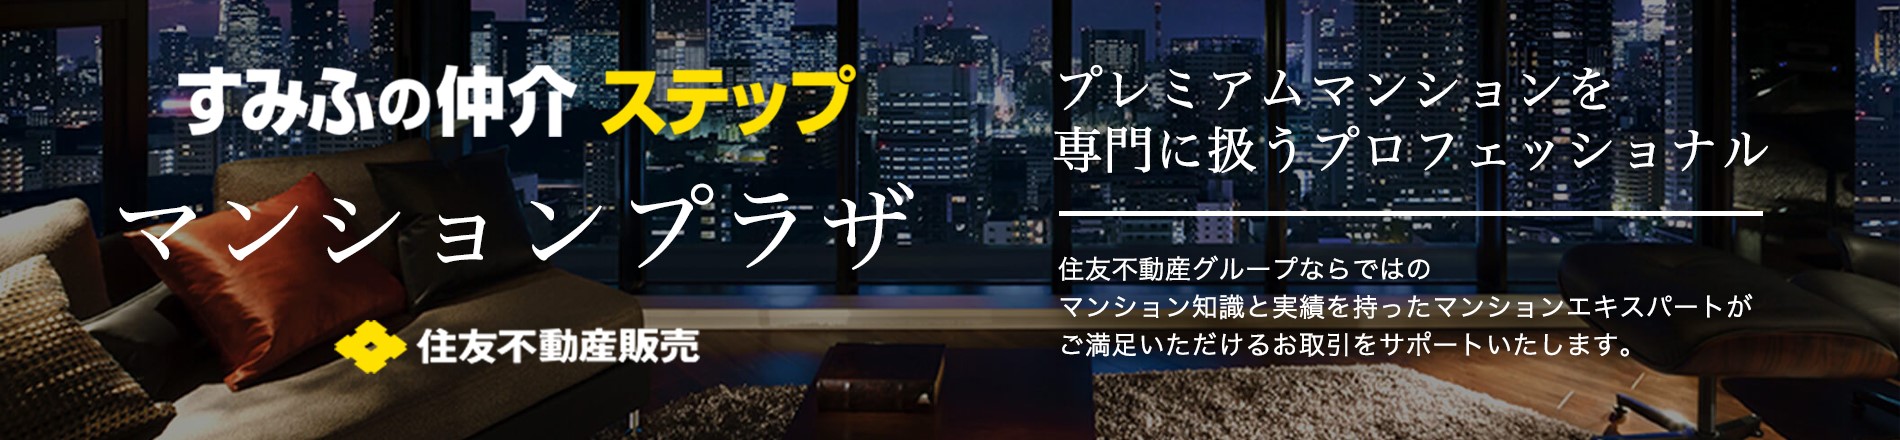 シティタワー広島のマンションプラザ